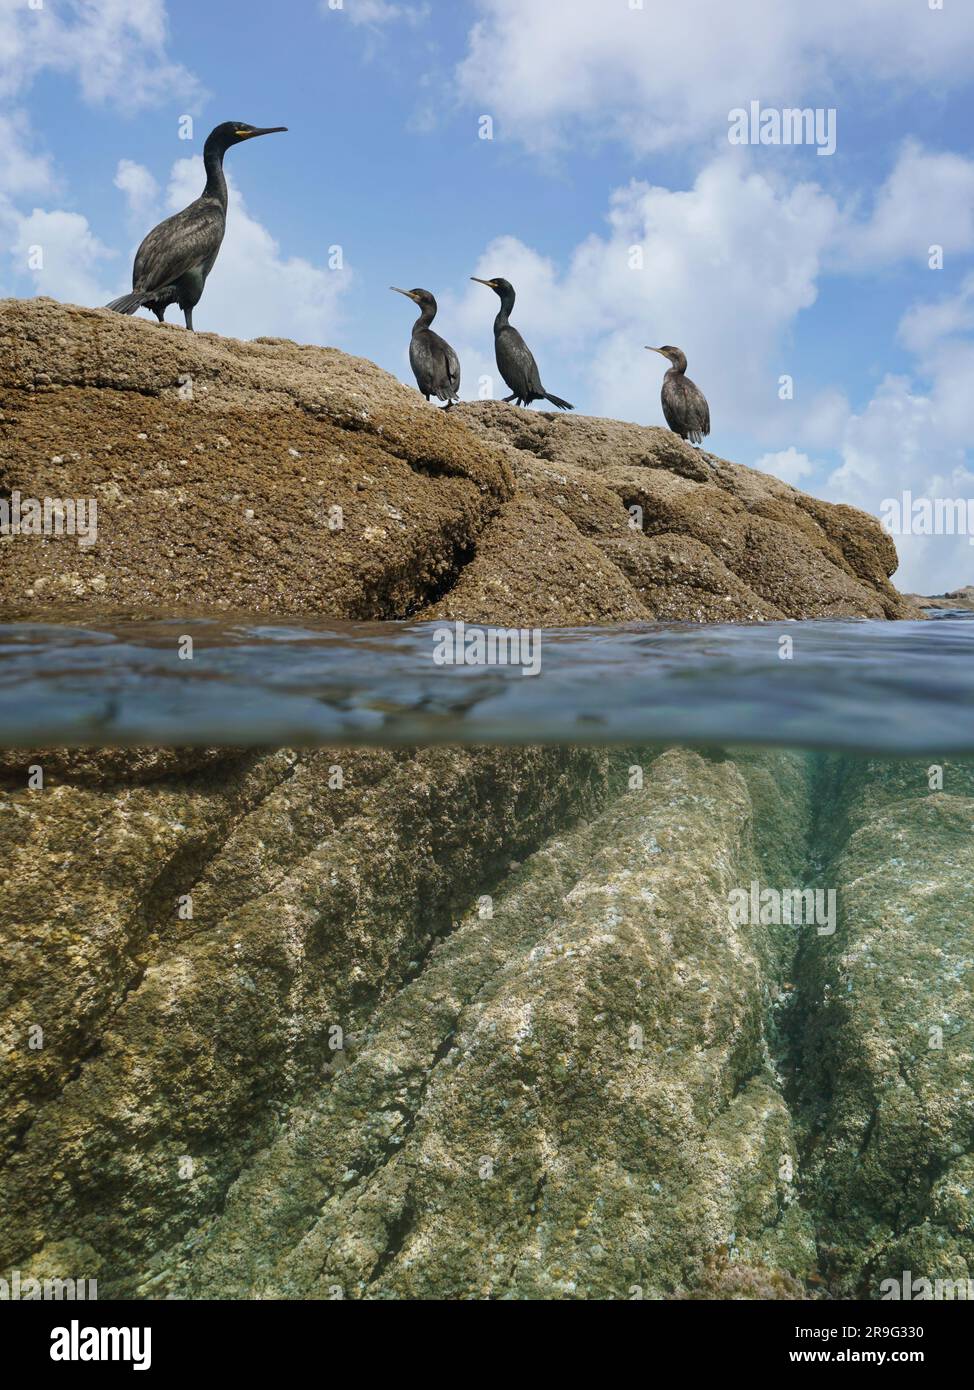 Aves cormoranes de pie en una roca en la orilla del mar, vista de nivel dividido sobre y debajo de la superficie del agua, océano Atlántico, España, Galicia Foto de stock